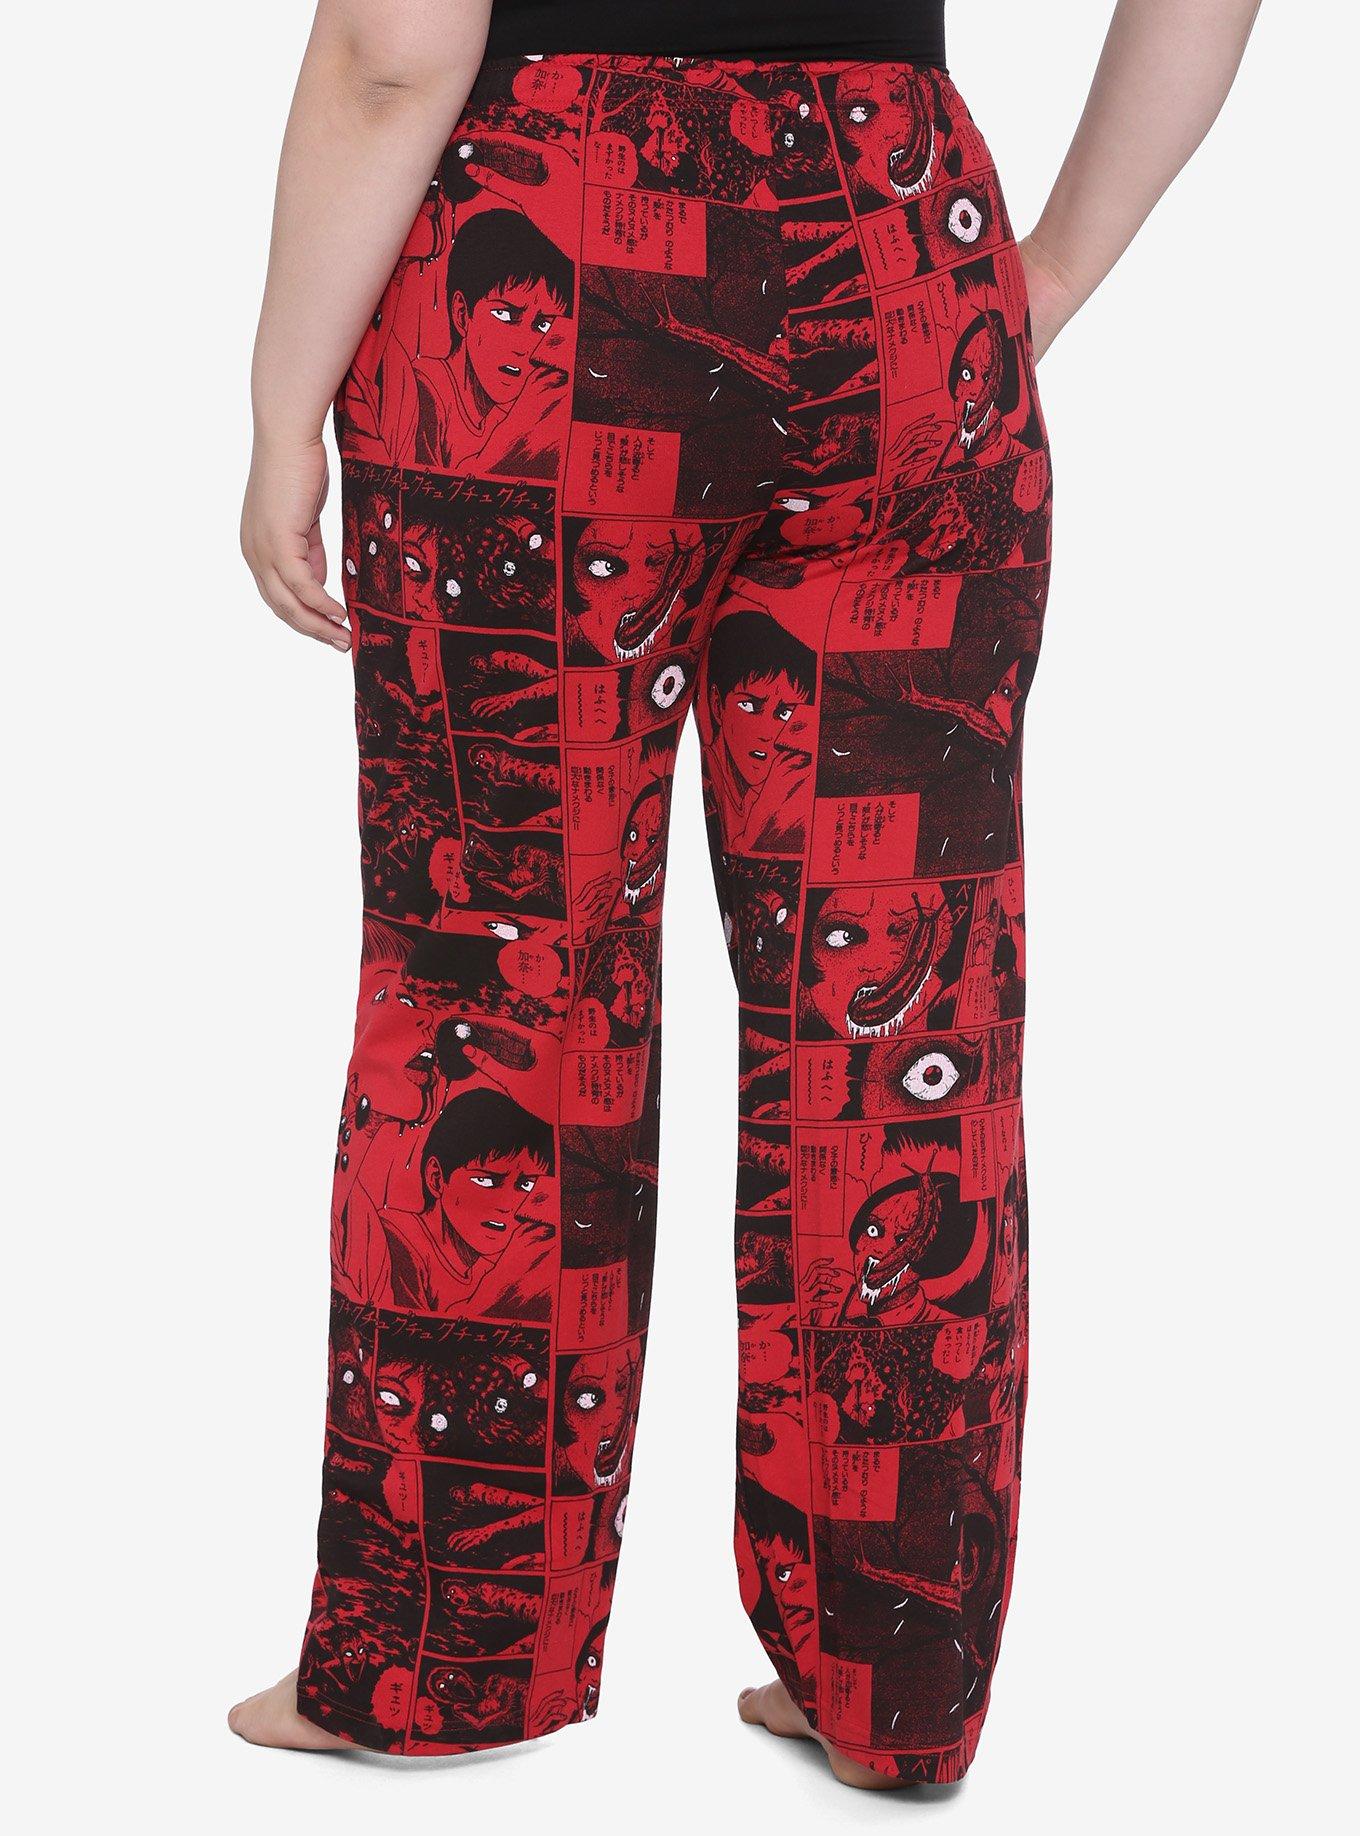 Junji Ito Panel Red Girls Pajama Pants Plus Size, RED, alternate